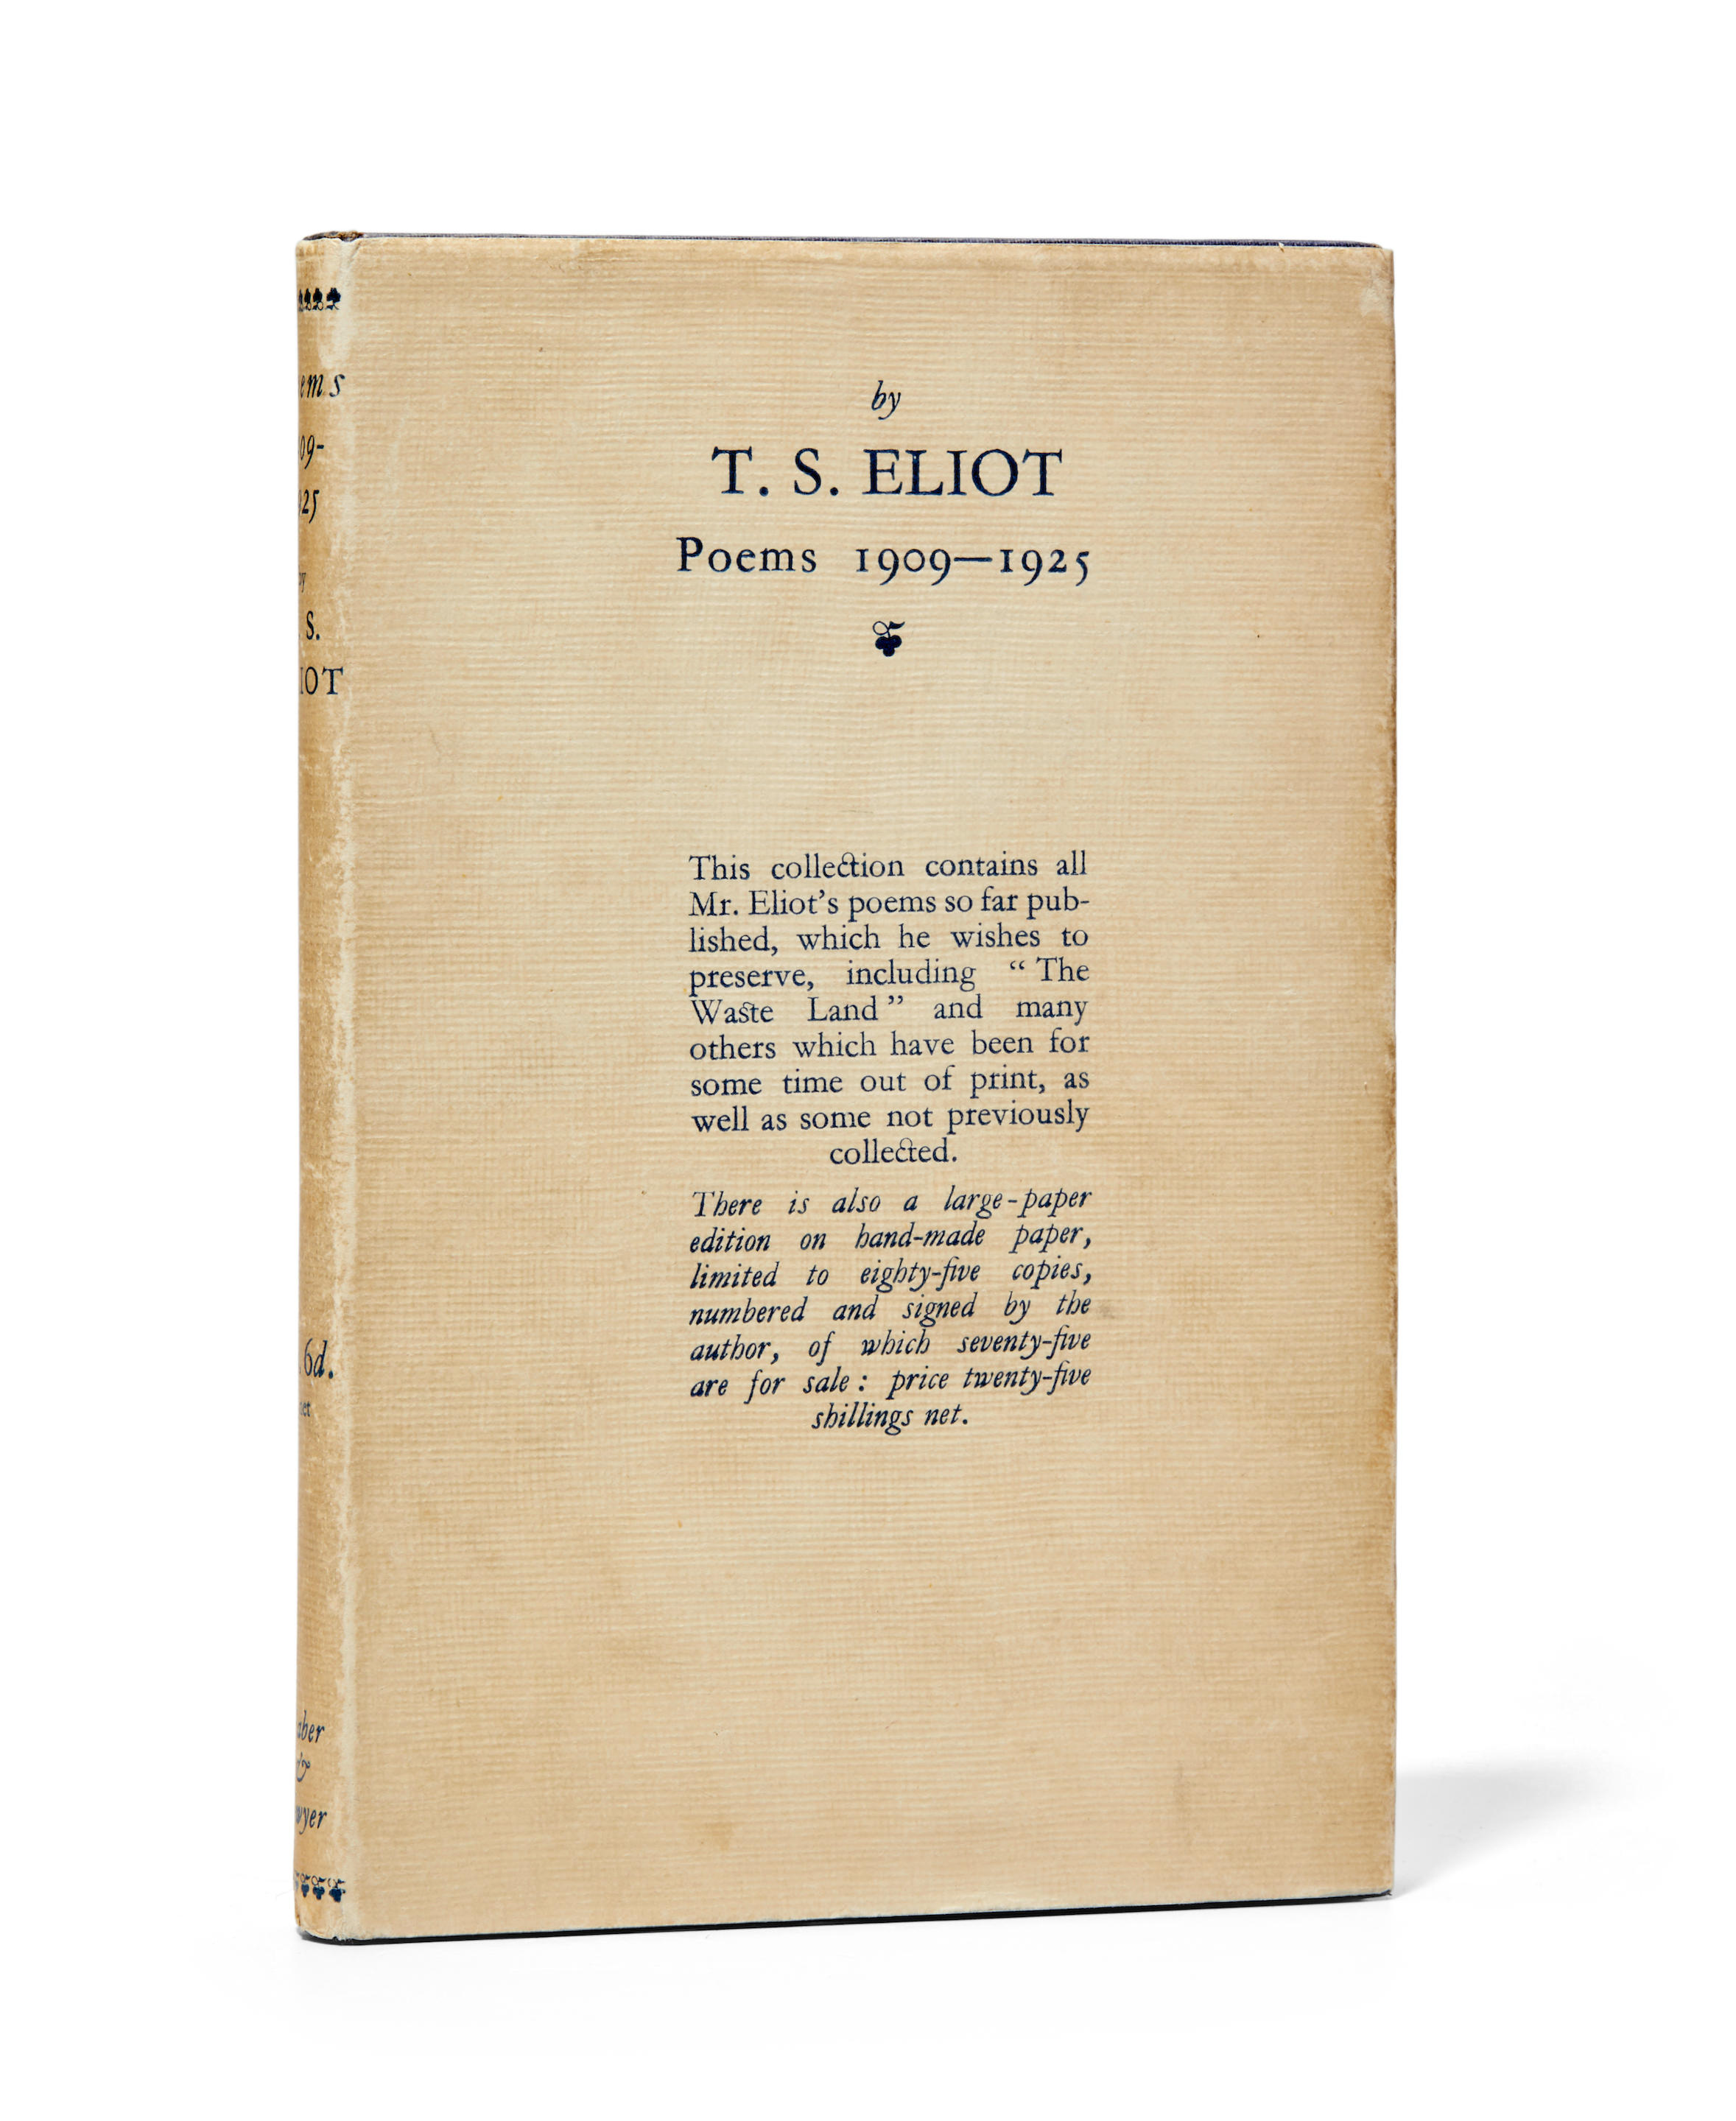 ELIOT, THOMAS STEARNS. 1888-1965.